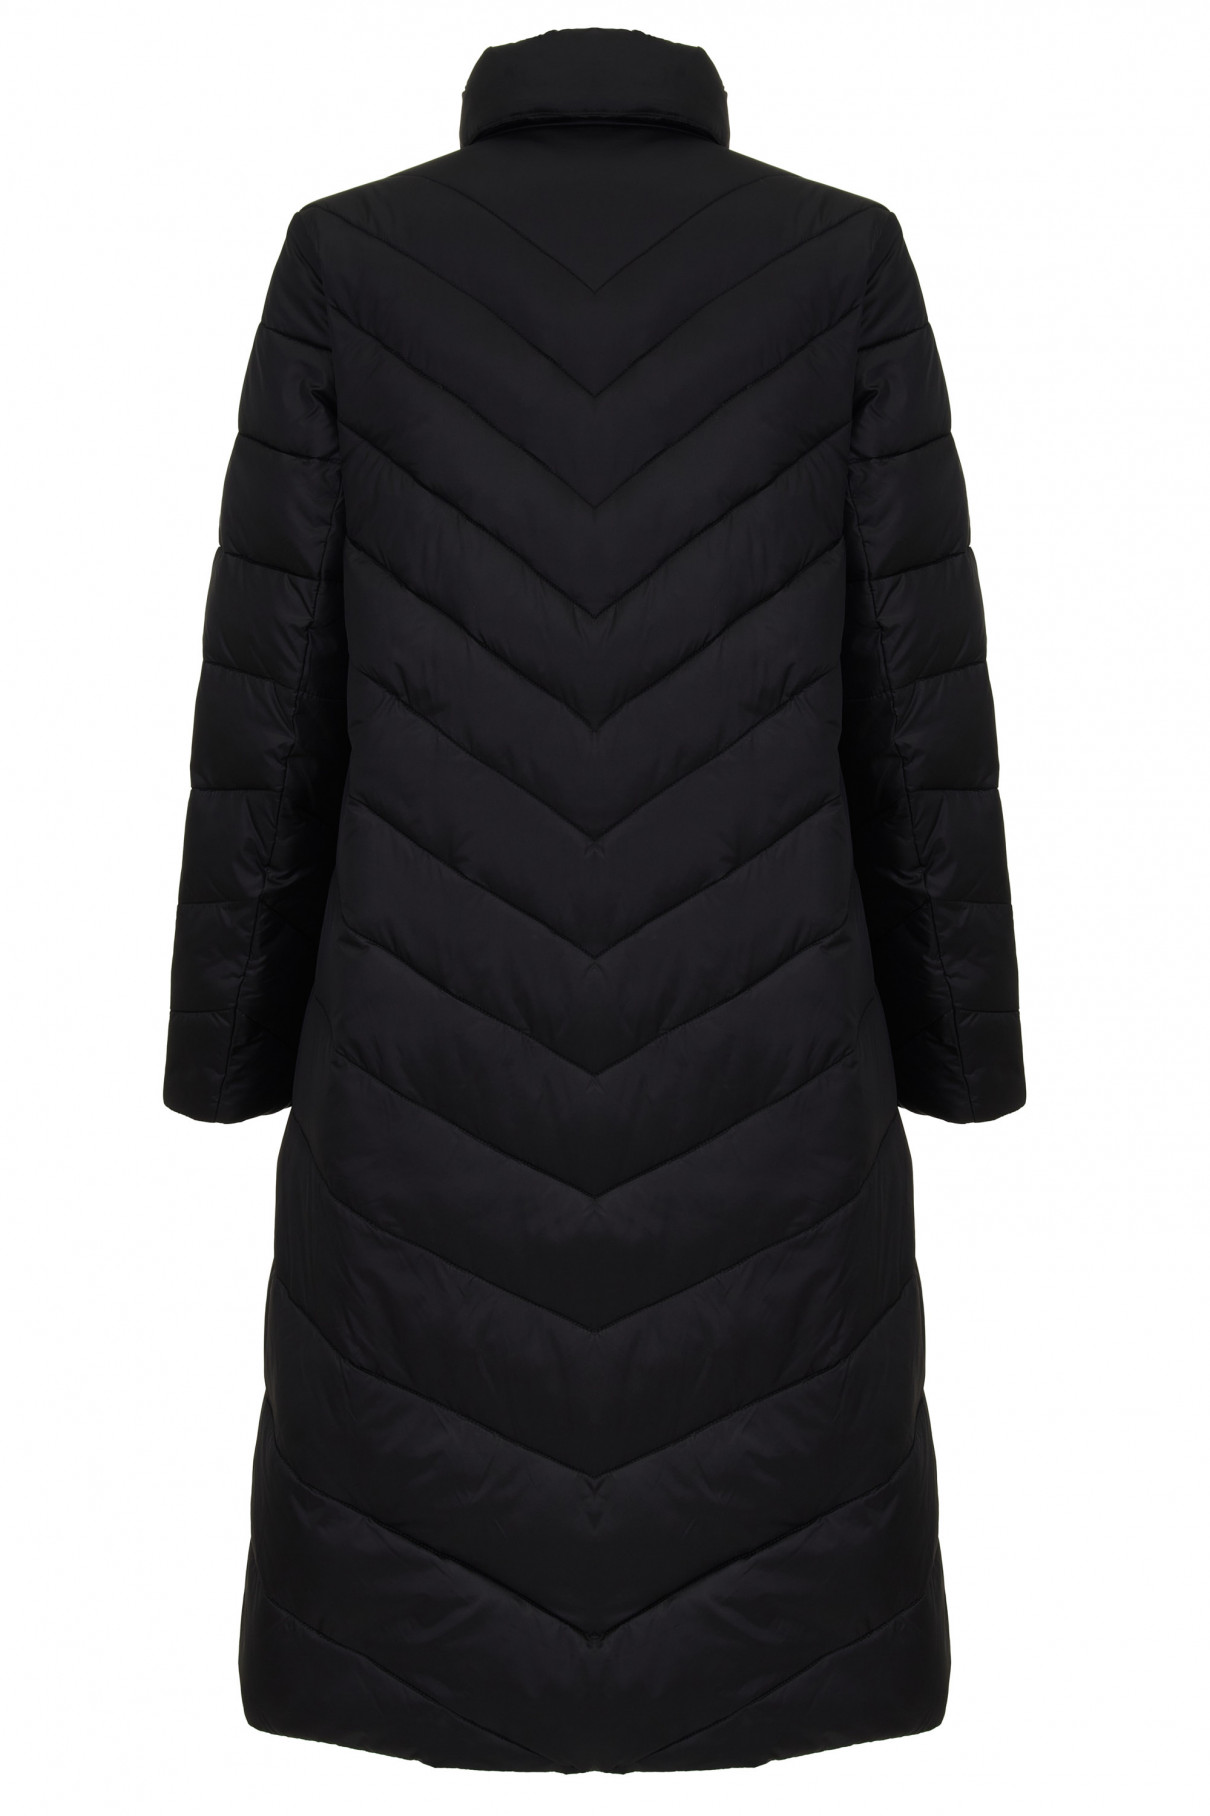 Пальто утепленное Abadi , Черный, арт. FR24SS1DJ40HDW600BL купить в интернет-магазине